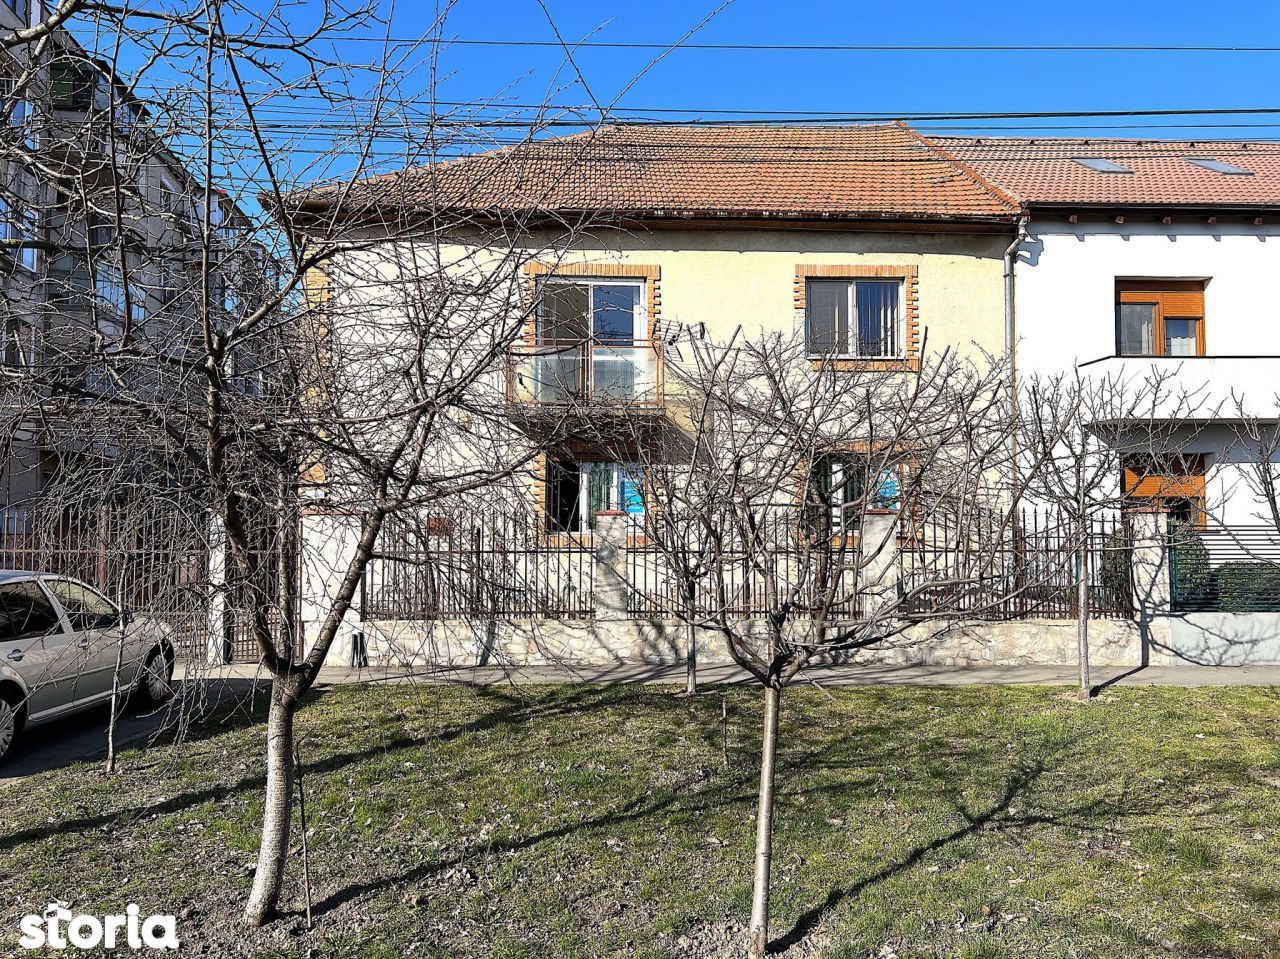 Apartament cu 4 camere la casa, 105mp utili, curte, Mircea cel Batran!